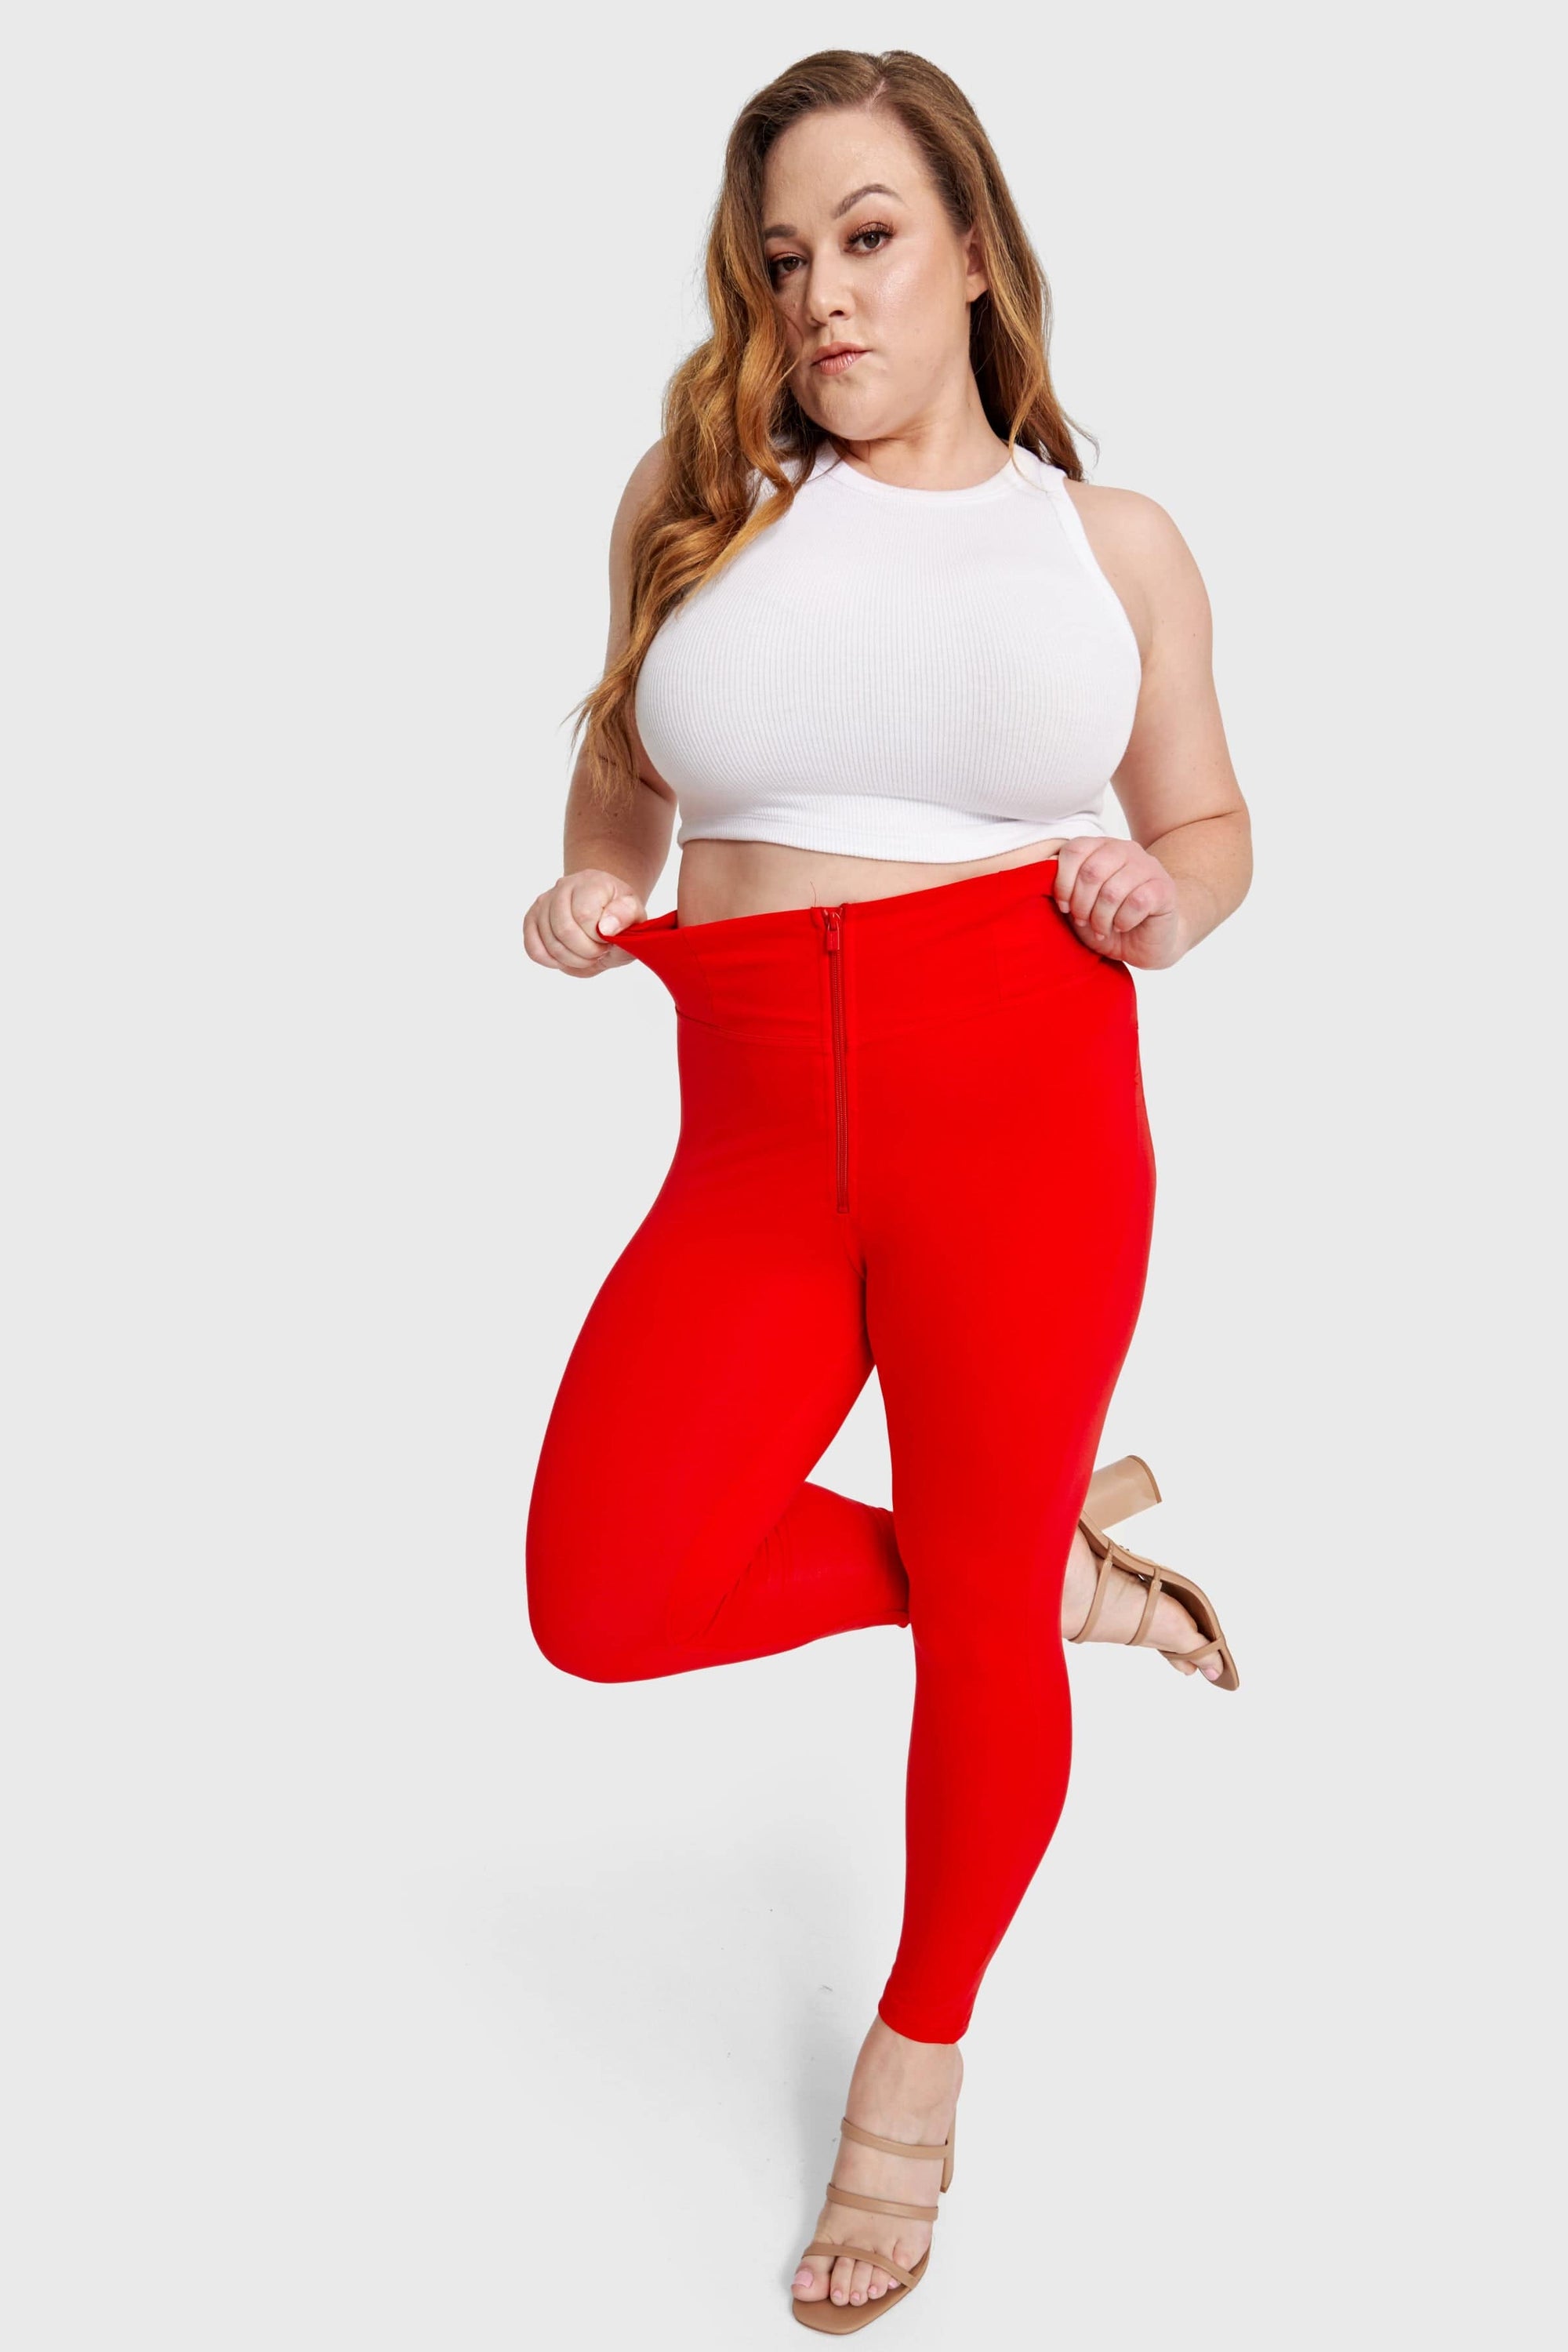 WR.UP® Curvy Fashion - Cintura alta con cremallera - 7/8 de largo - Rojo 6